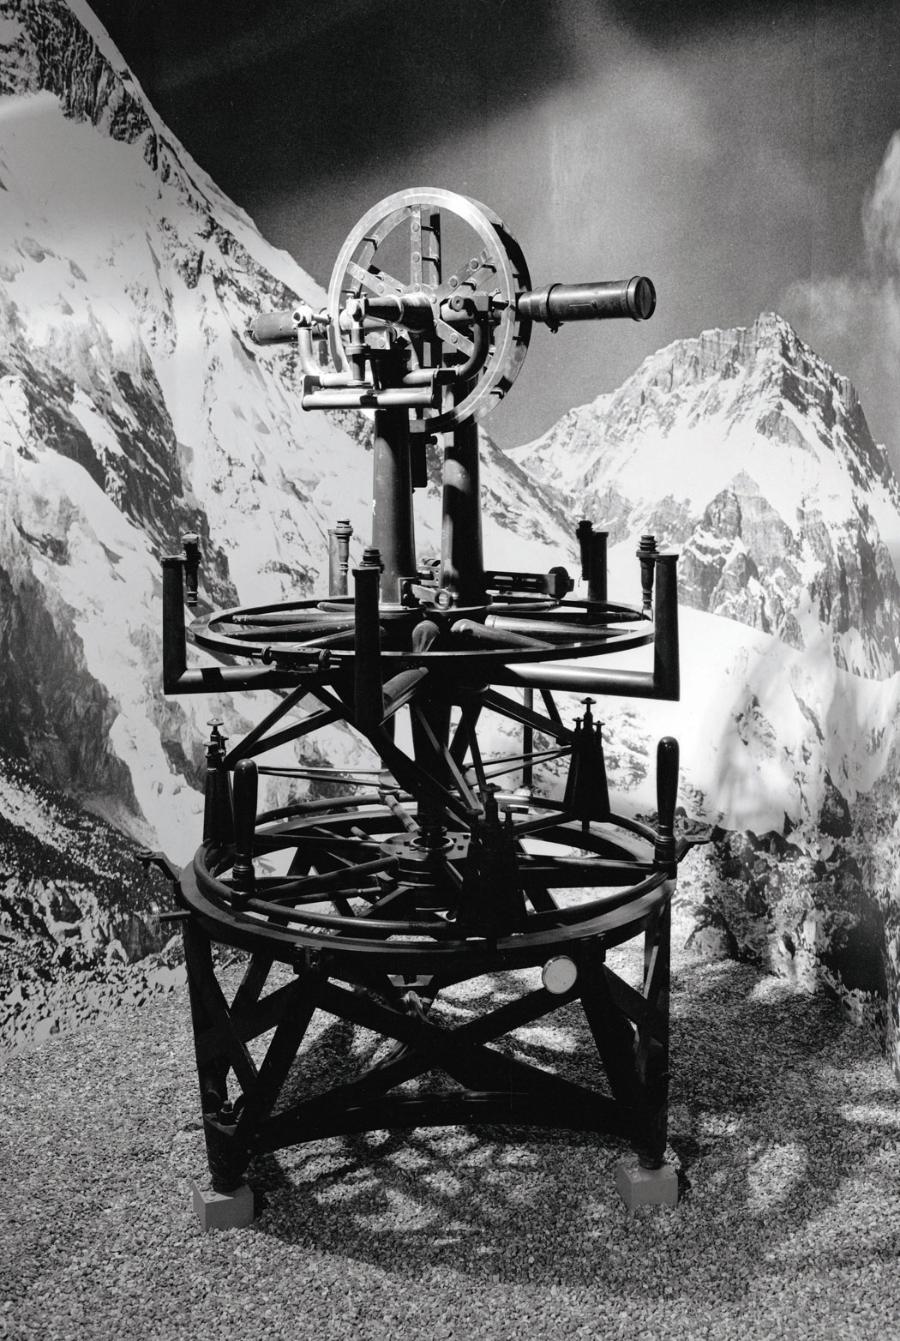 Ważący niemal 500 kg teodolit, za pomocą którego w połowie XIX w. po raz pierwszy zmierzono wysokość Everestu.